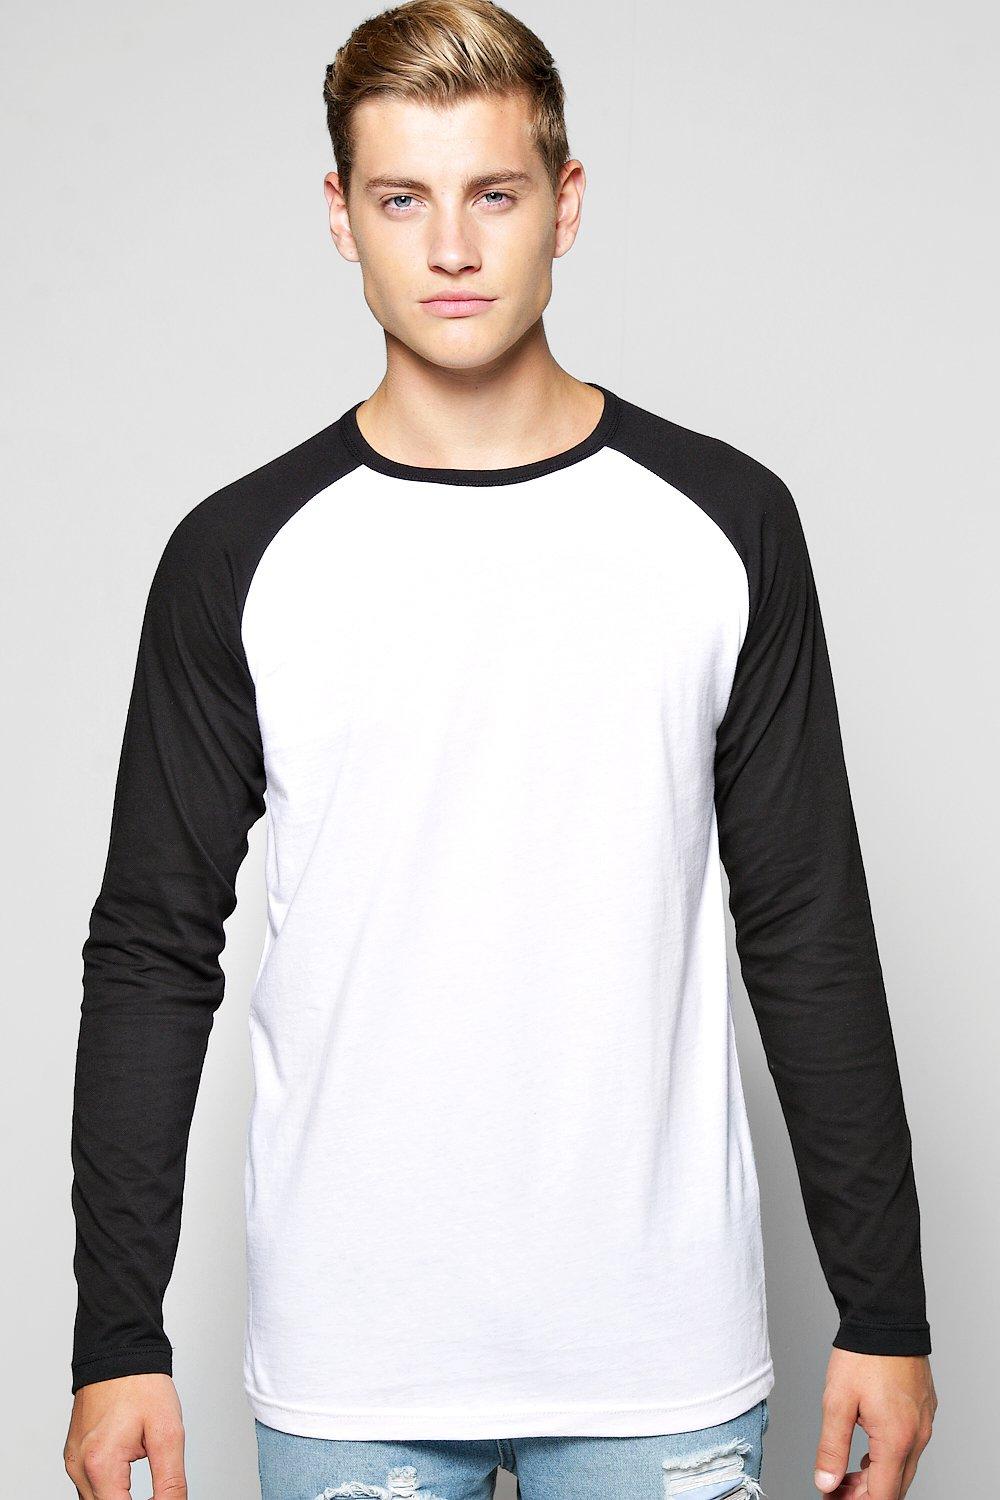 Boohoo Mens Long Sleeve Raglan T Shirt | eBay